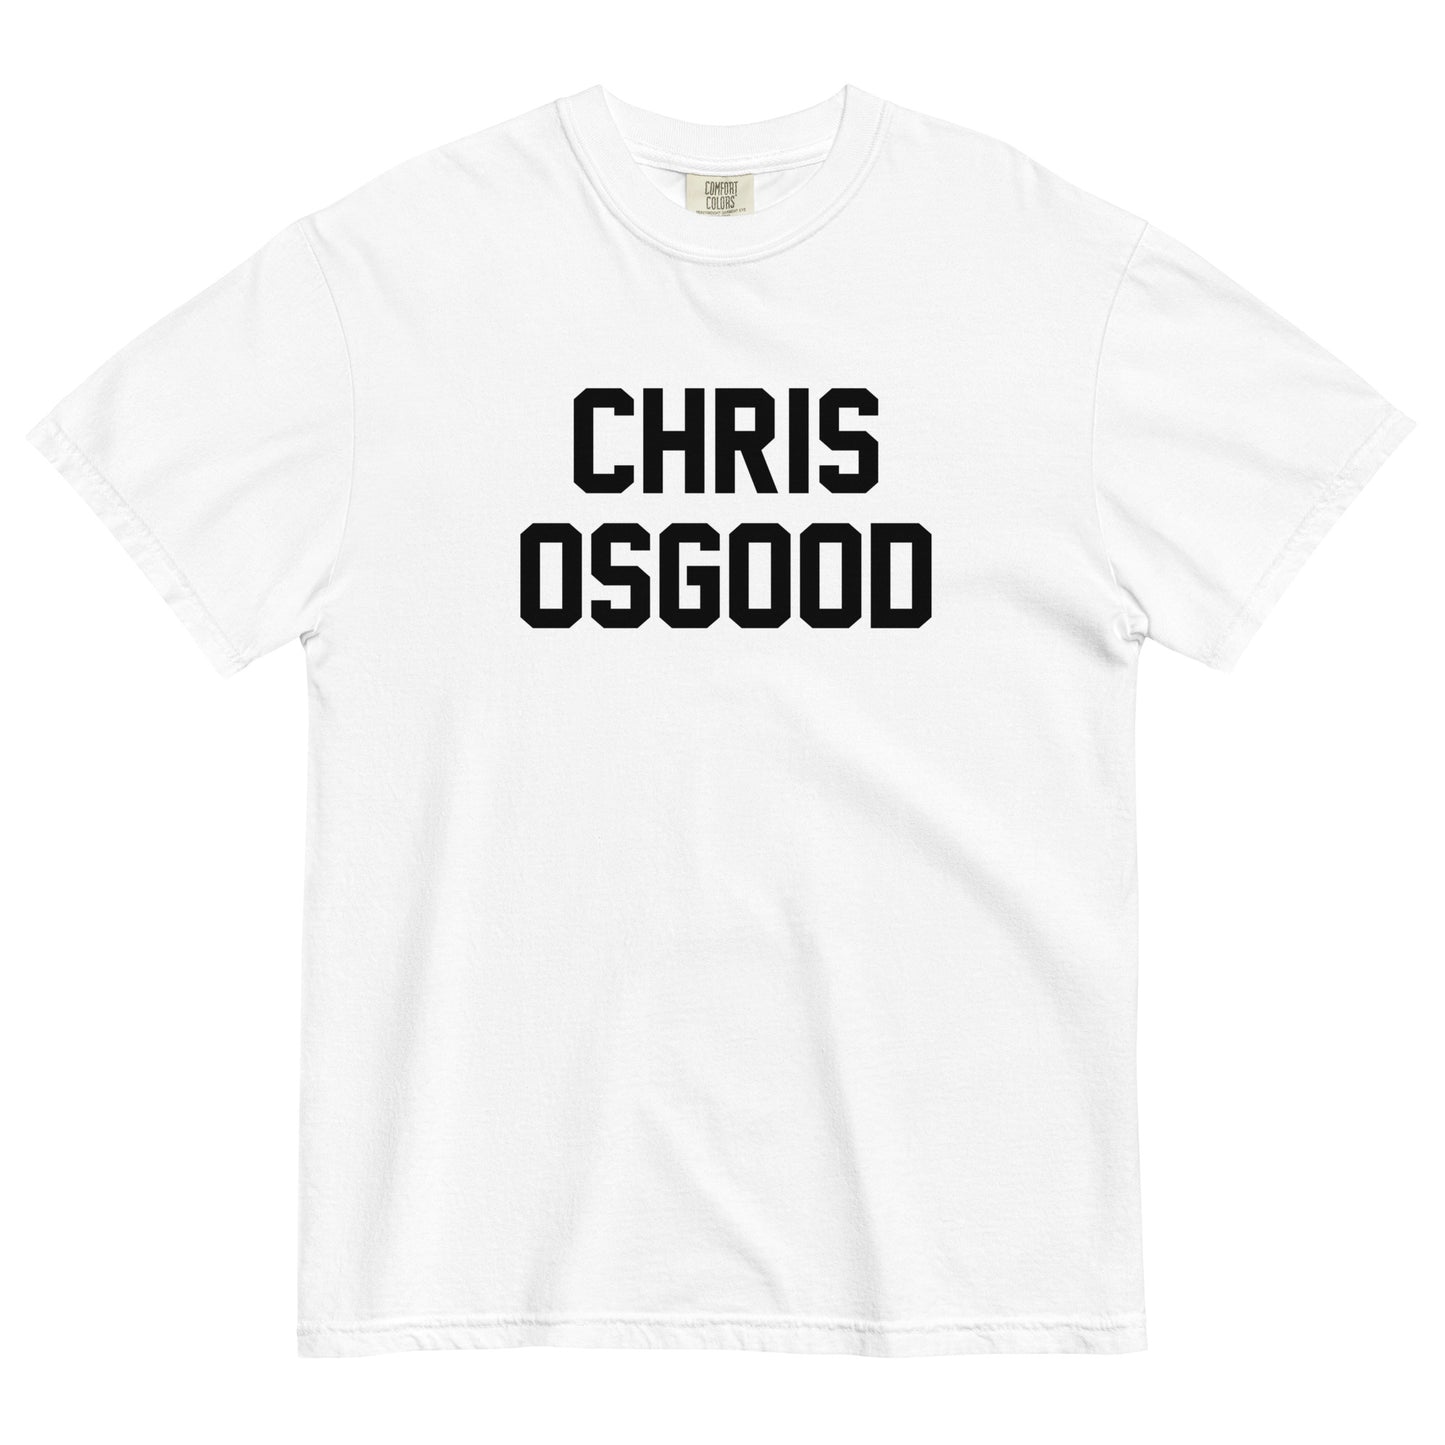 CHRIS OSGOOD